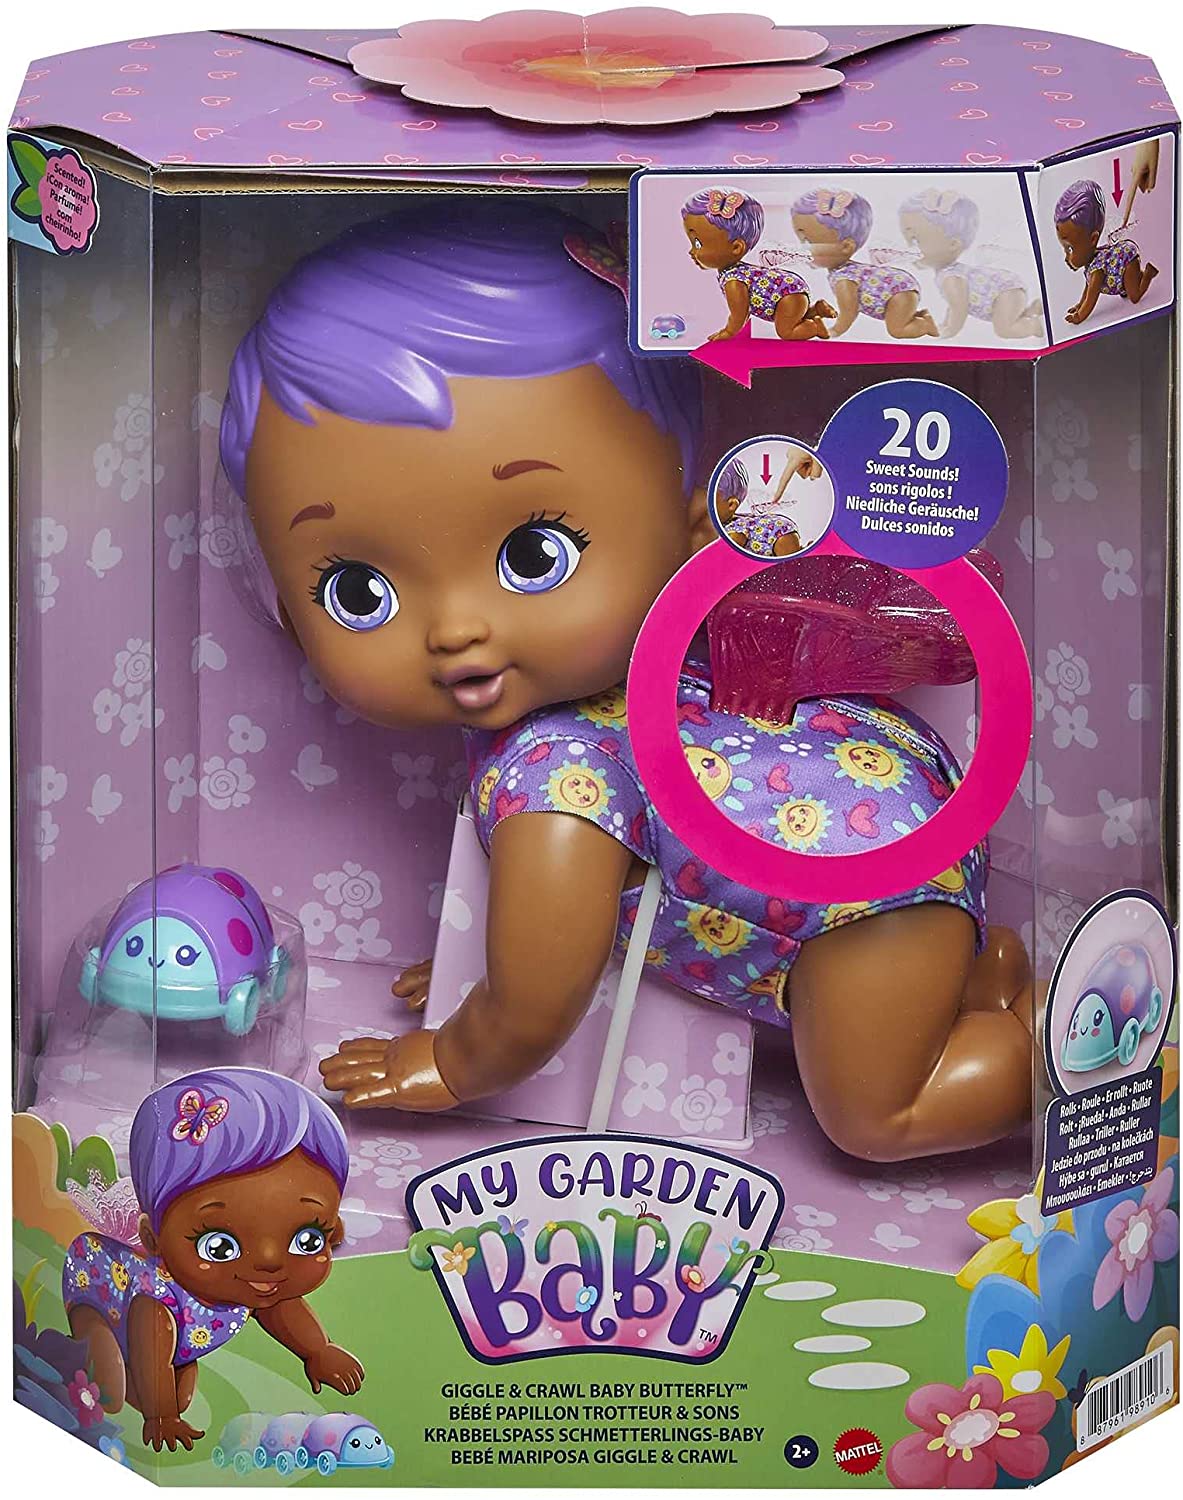 My Garden Baby - new cute toddler nurturing dolls from Mattel